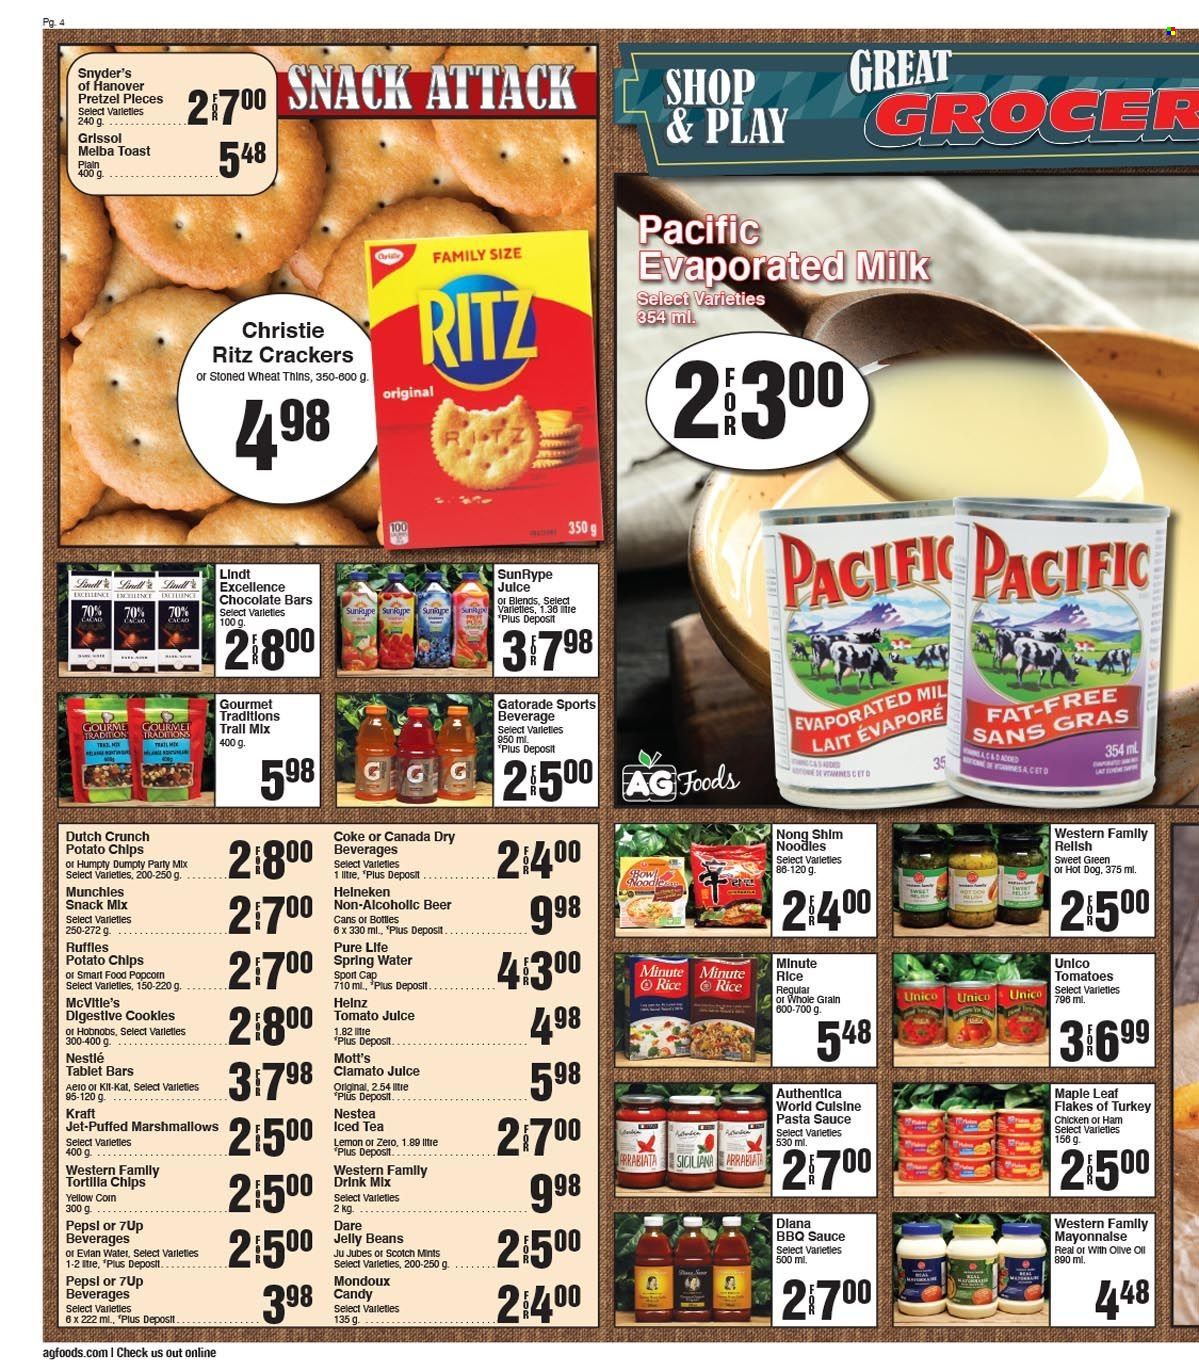 AG Foods flyer  - January 22, 2023 - January 28, 2023.